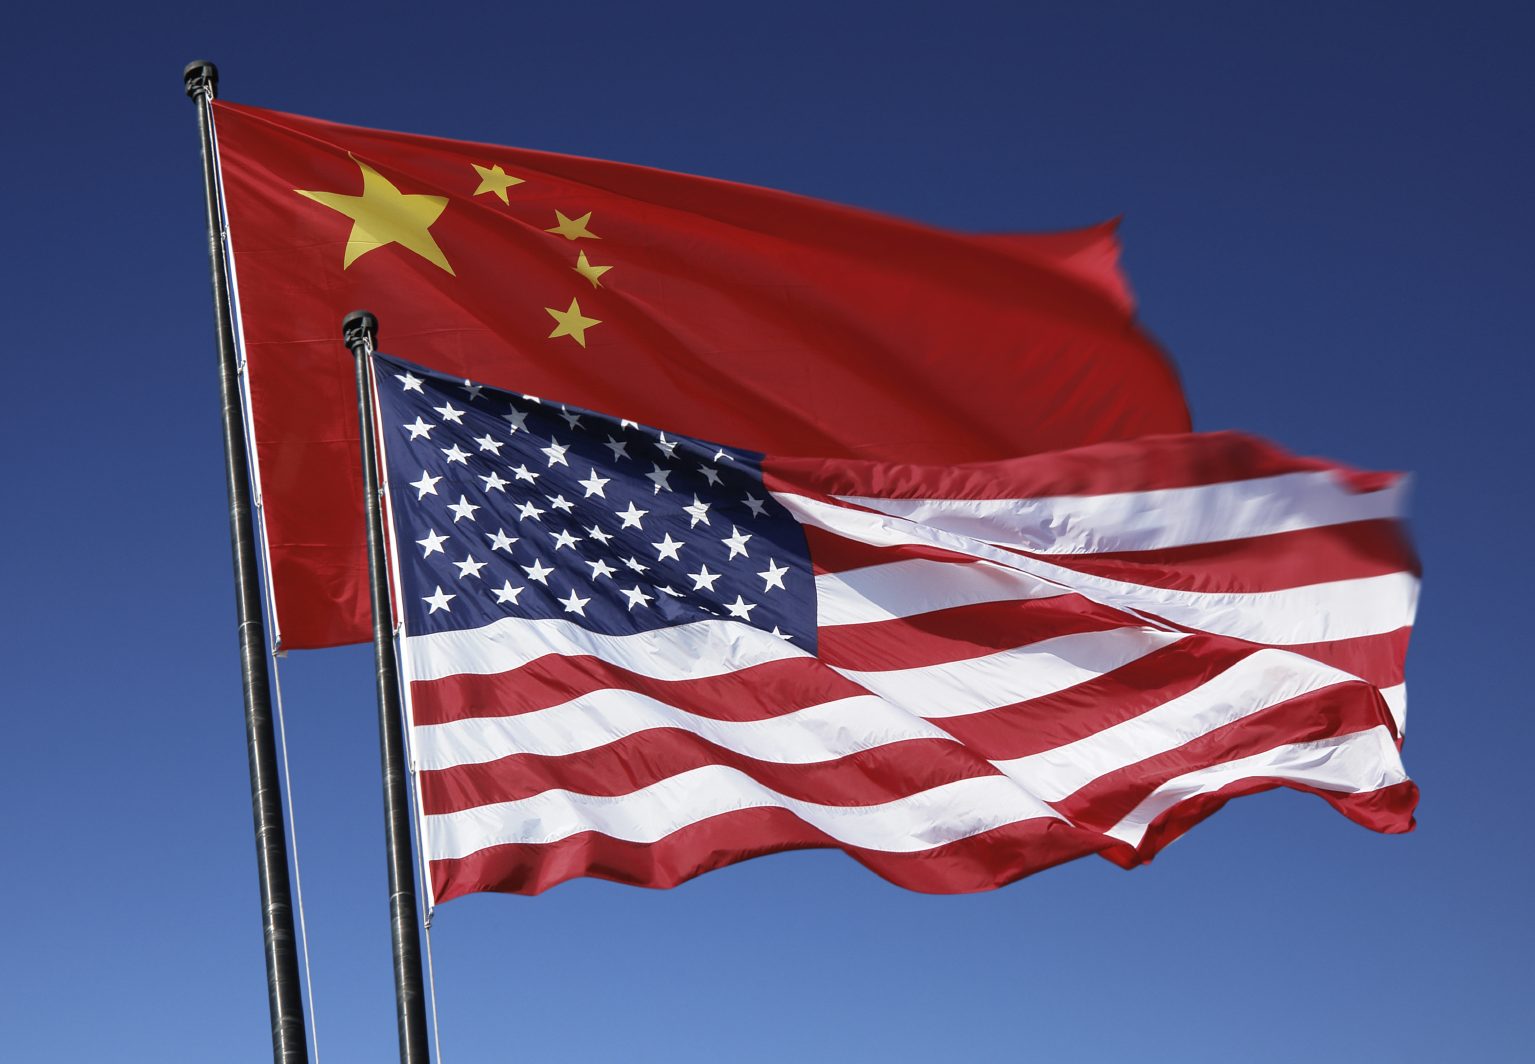 Эксперт: победителей в торговой войне между США и Китаем нет  